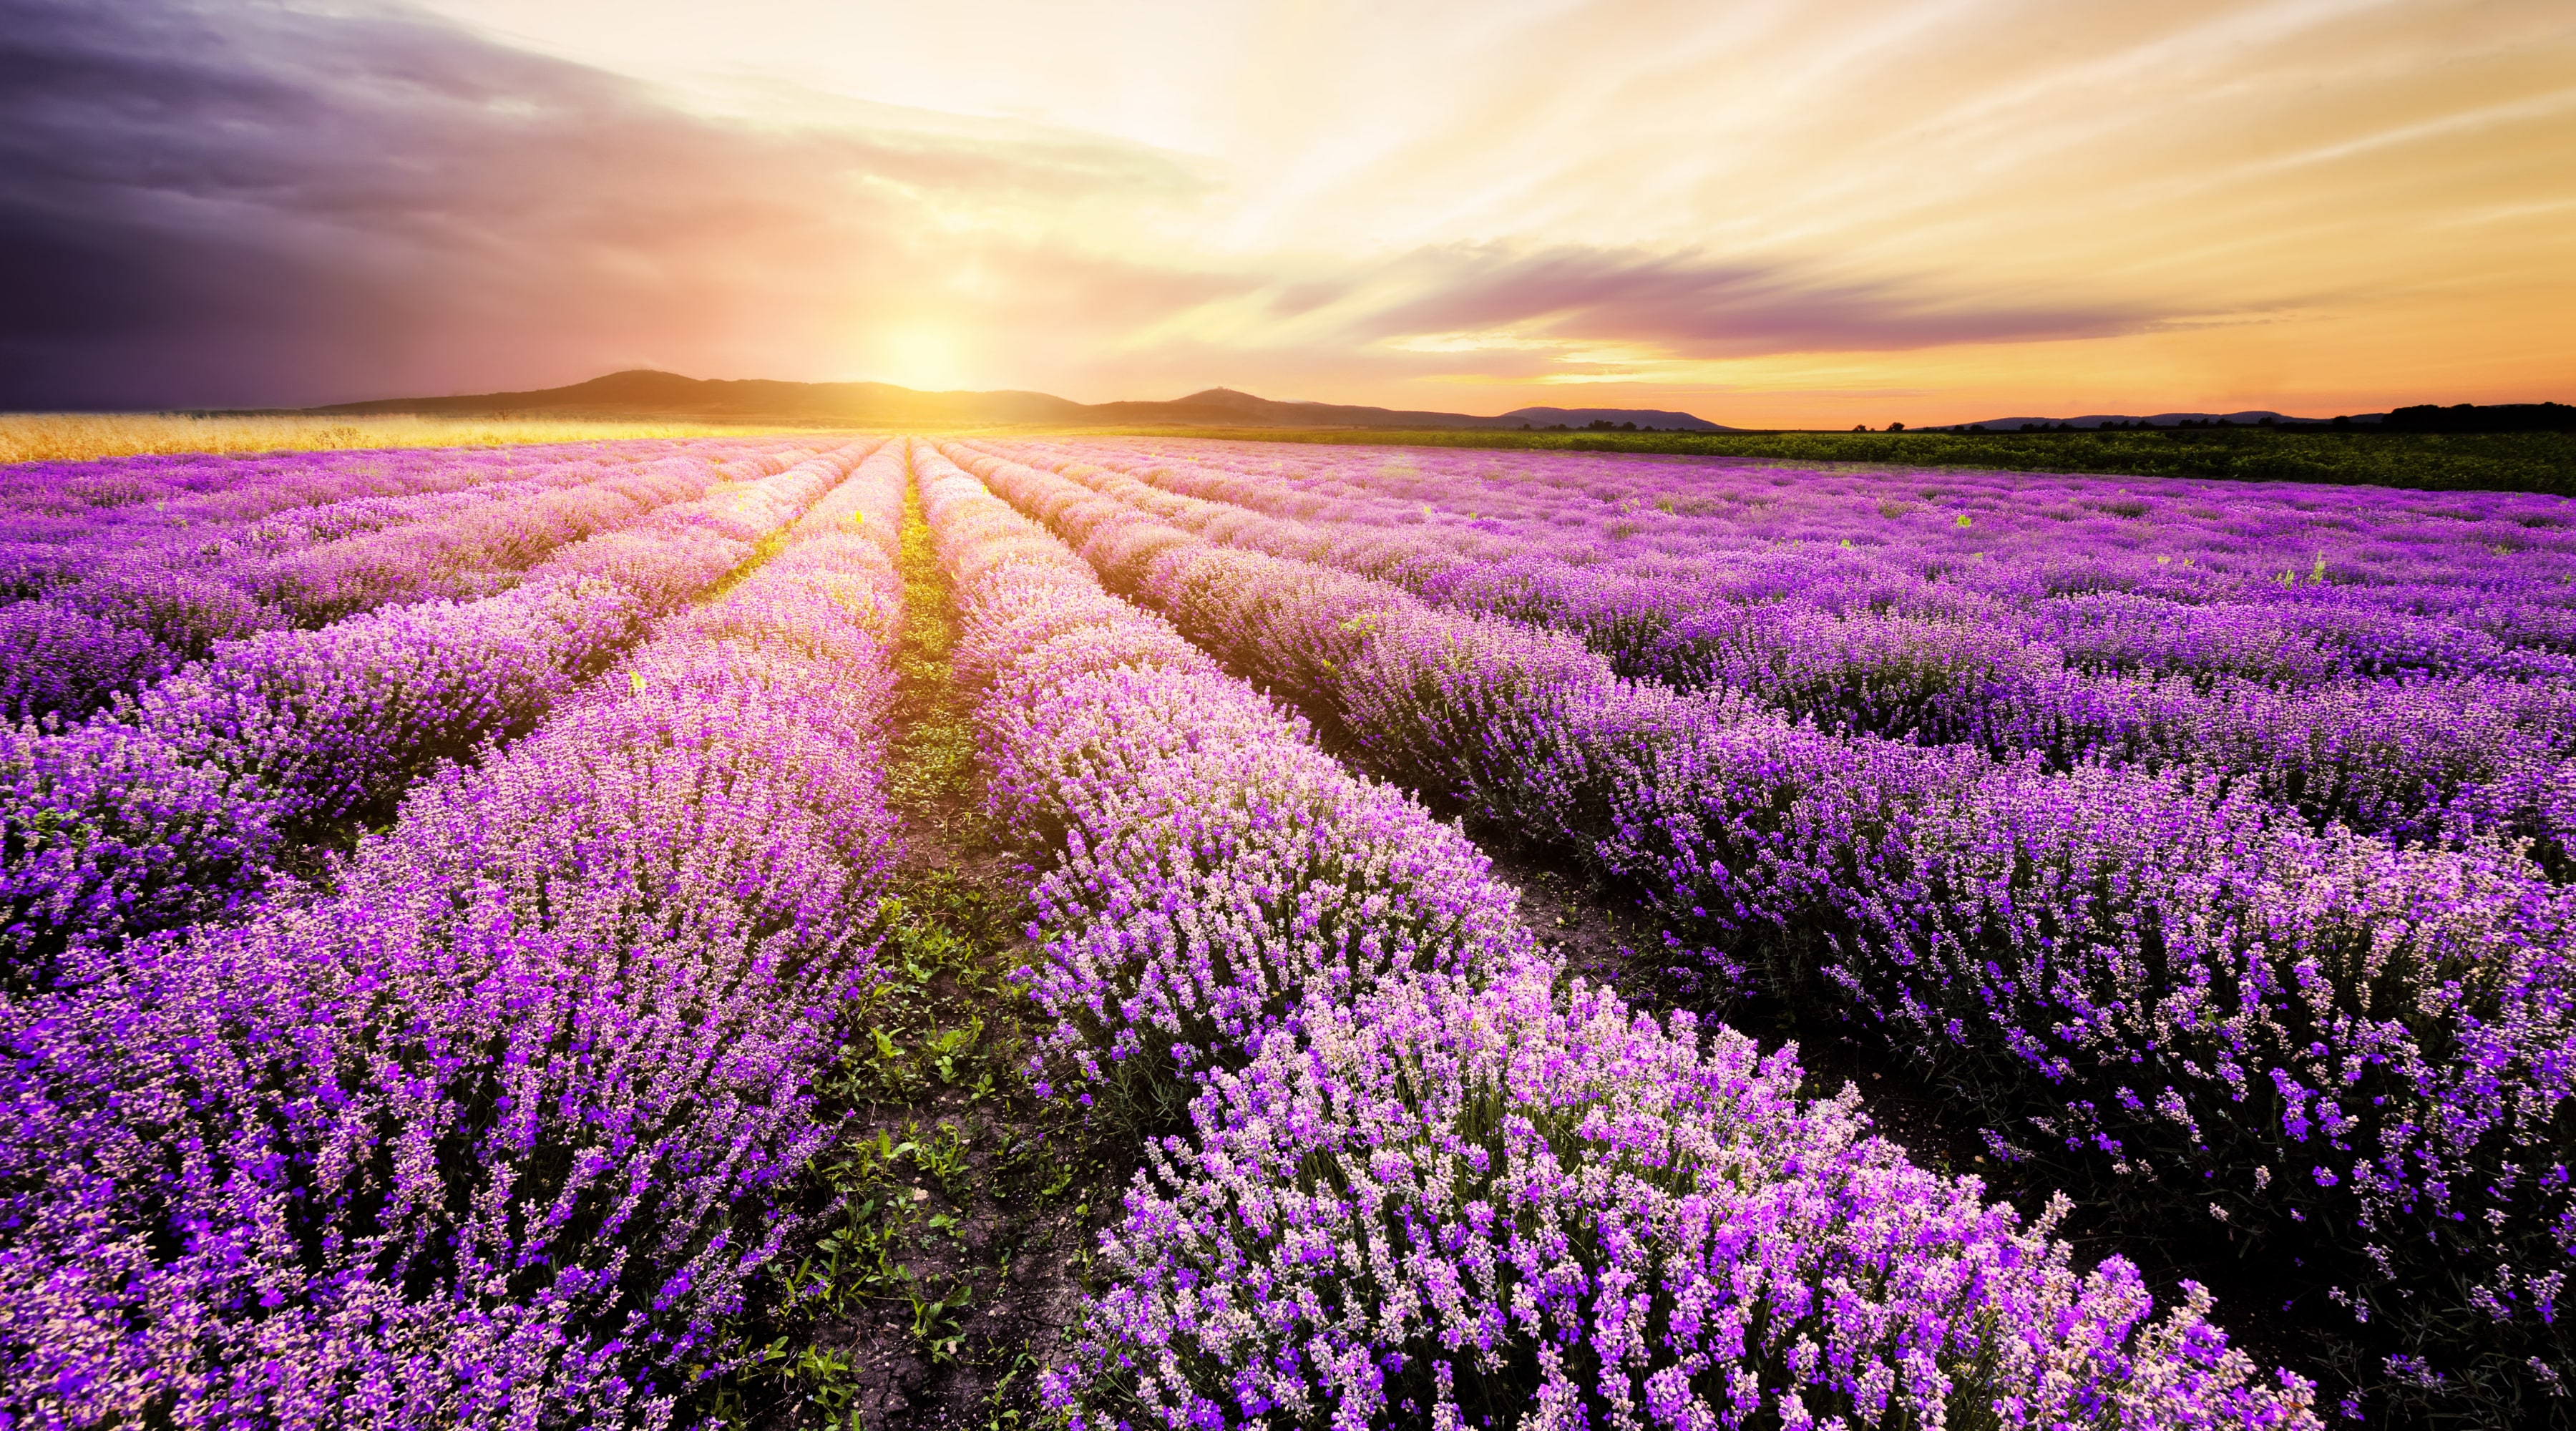 Lavendelolja – bra för både kropp och själ